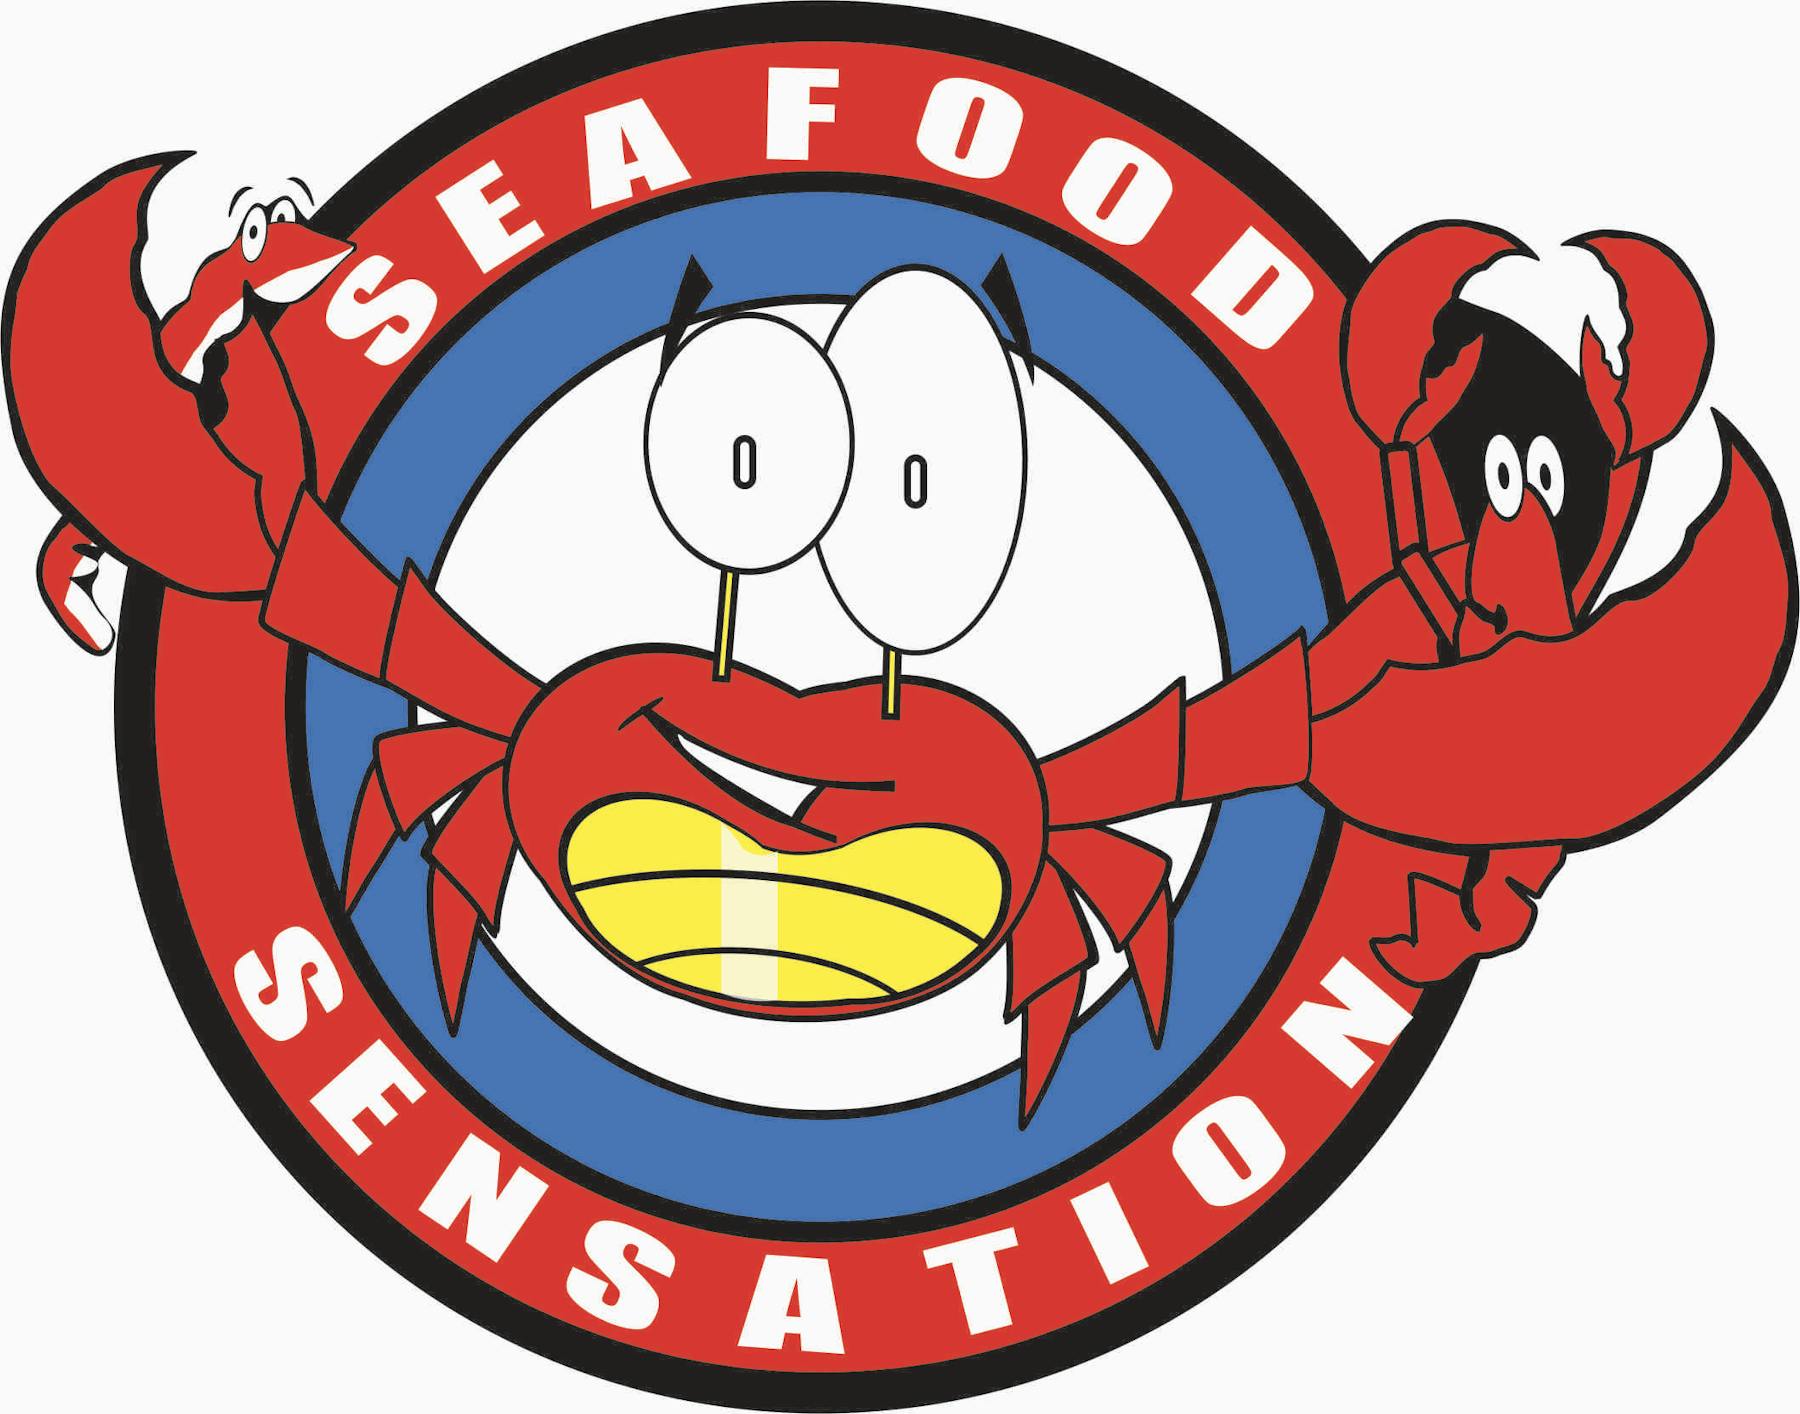 Online Ordering | Seafood Sensation - Seafood Restaurant in Nashville ...